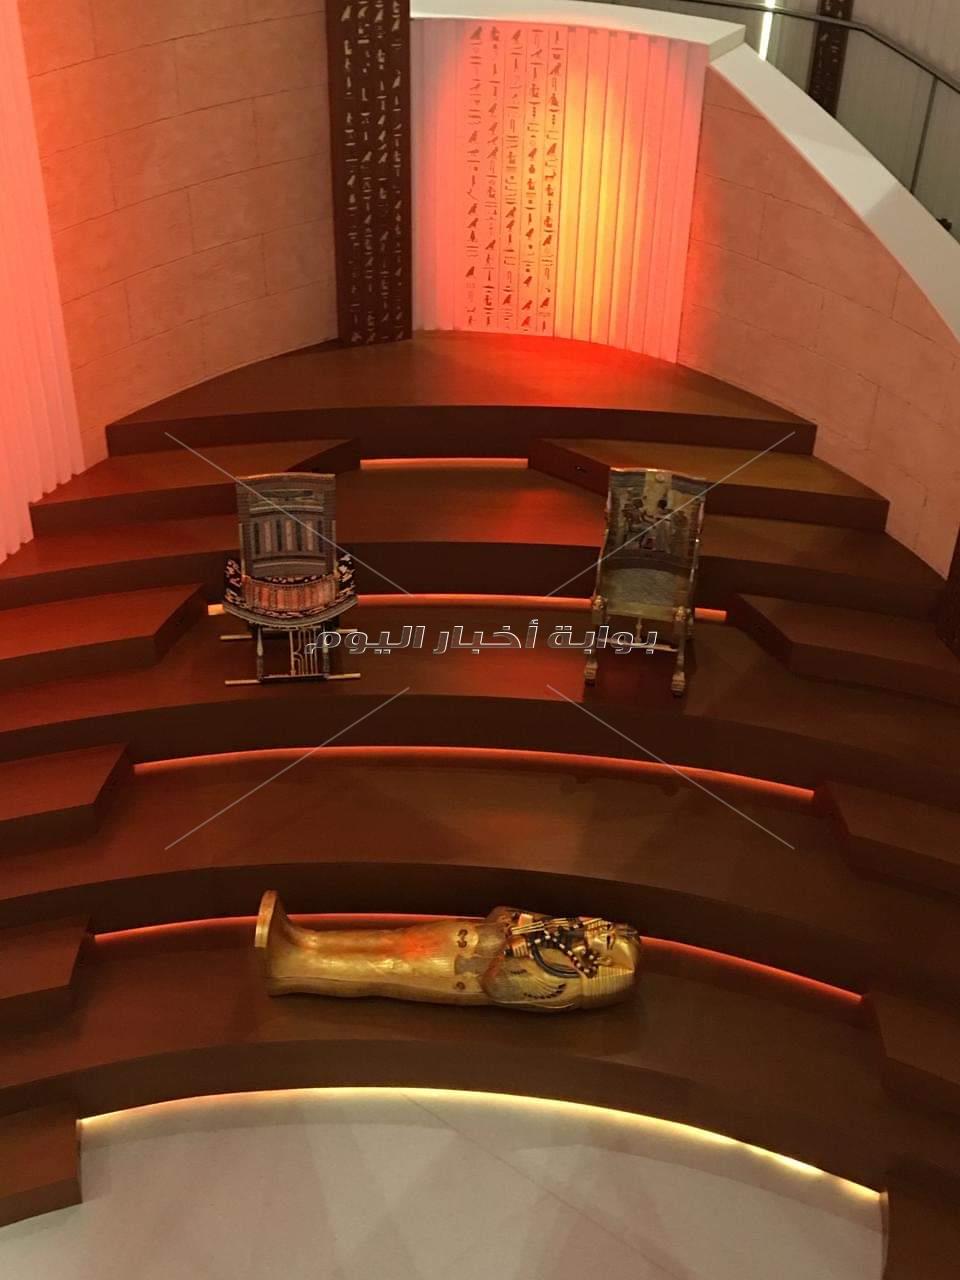 تابوت أثري ومستنسخات في الجناح المصري بمعرض إكسبو دبي 2020